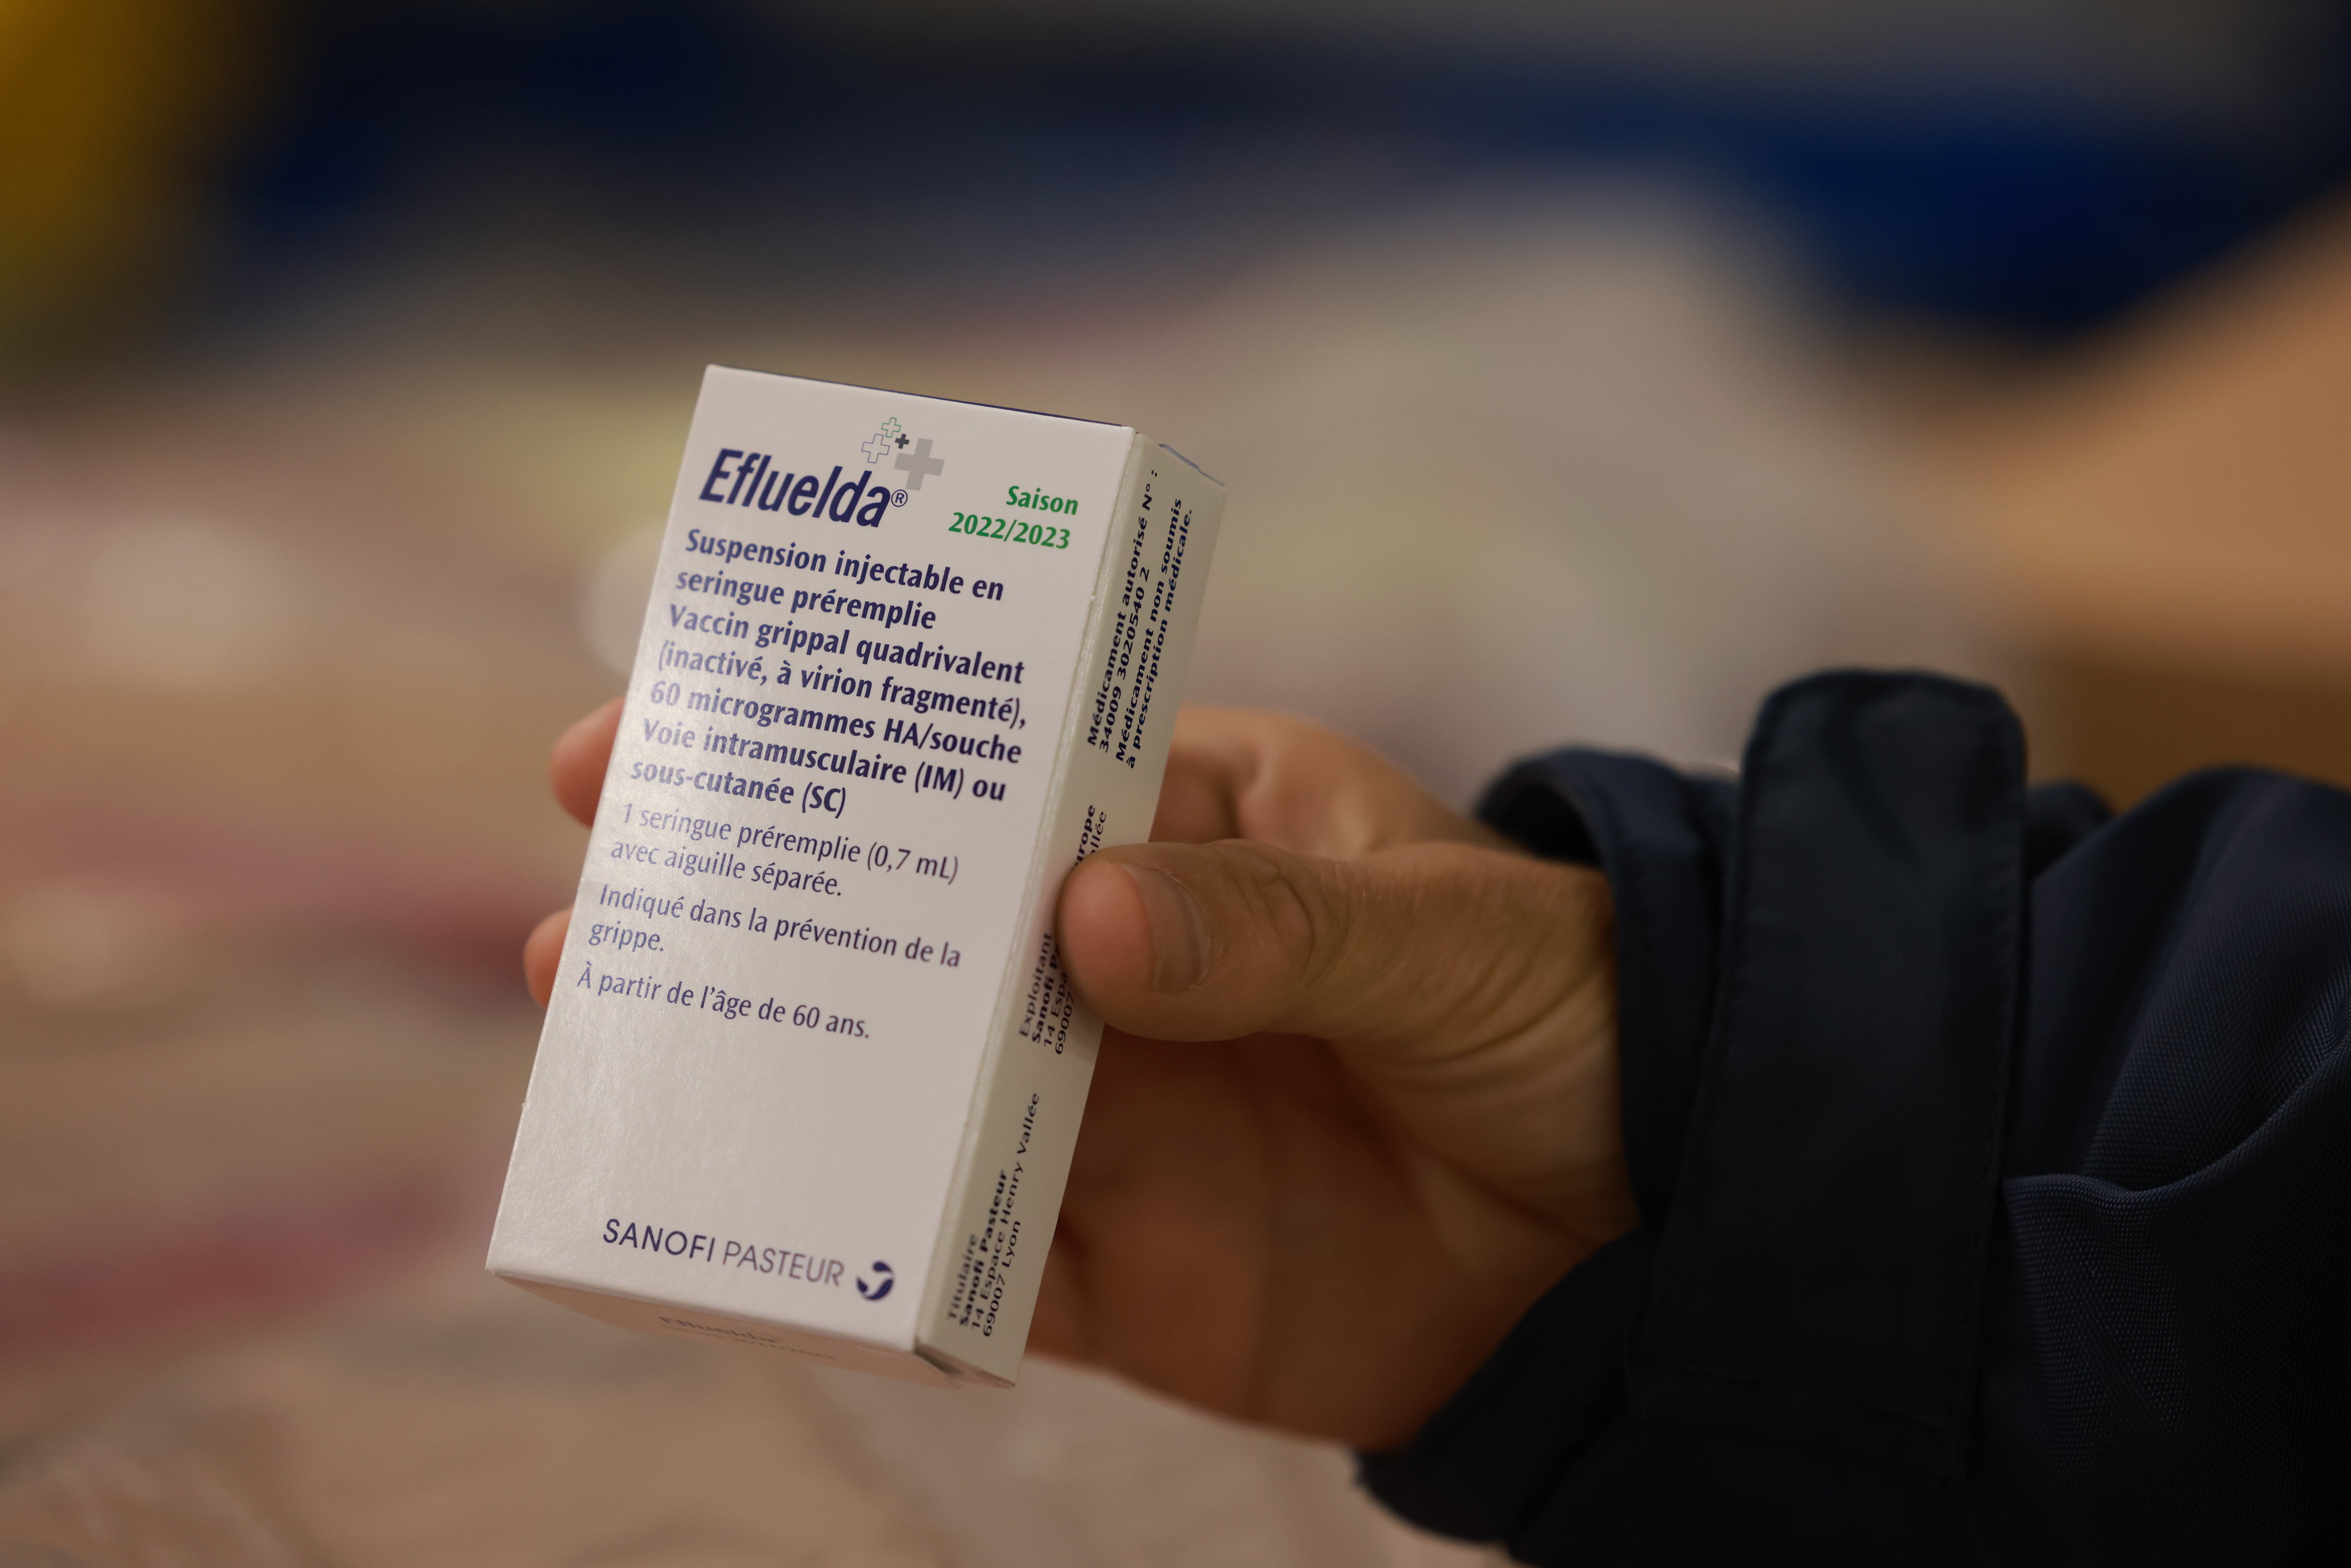 La Direction générale de la Santé a annoncé le retrait du marché du vaccin Efluelda commercialisé par le laboratoire Sanofi dans les prochaines semaines. LP/Ph. Lavieille